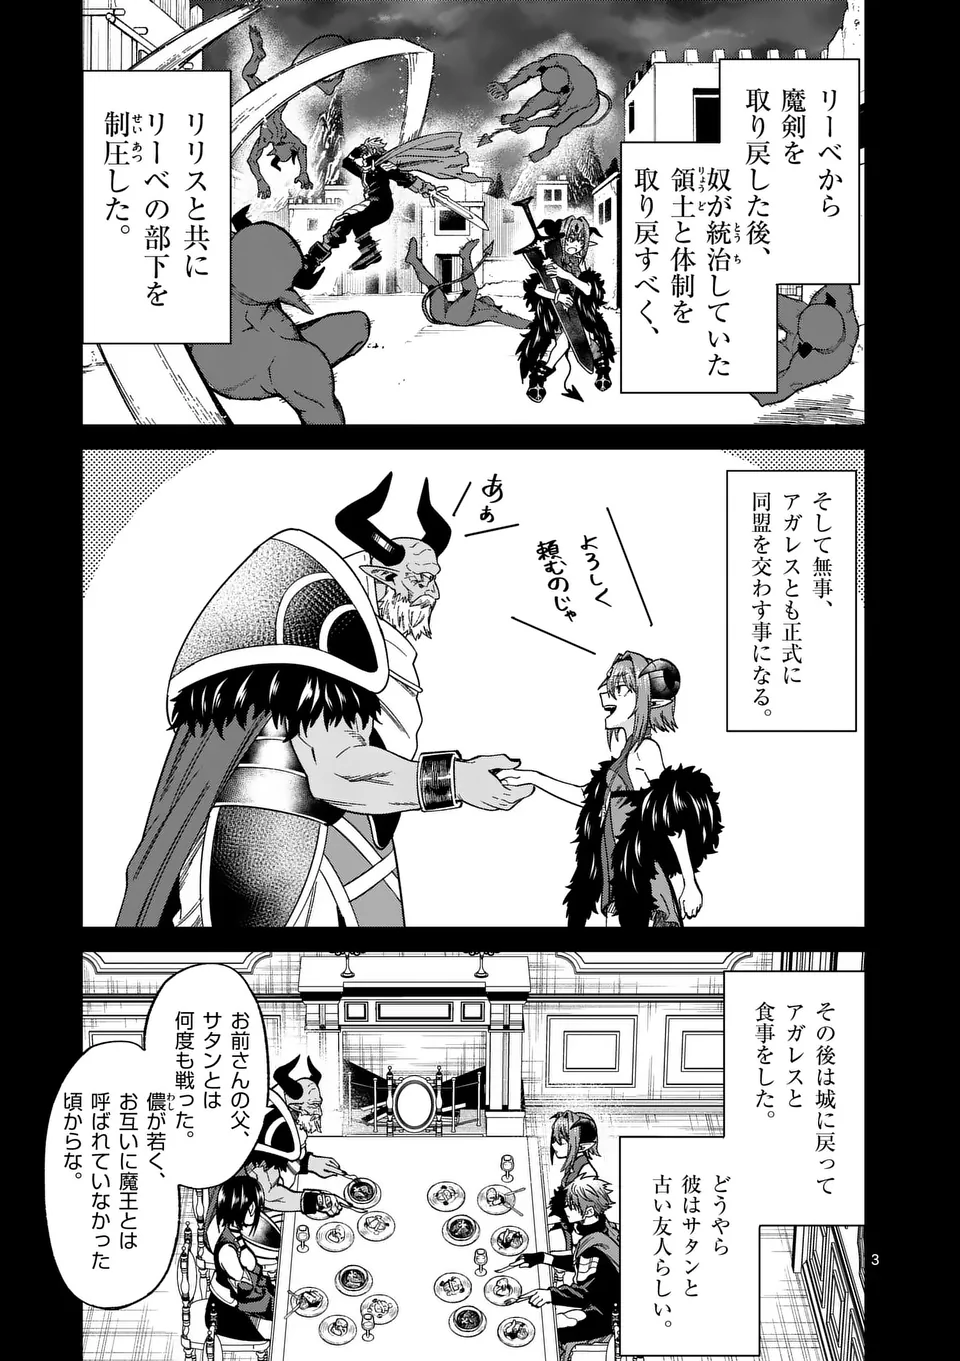 Power-Hara Genkai Yuusha, Maougun kara Koutaiguu de Scout sareru - Chapter 8 - Page 3